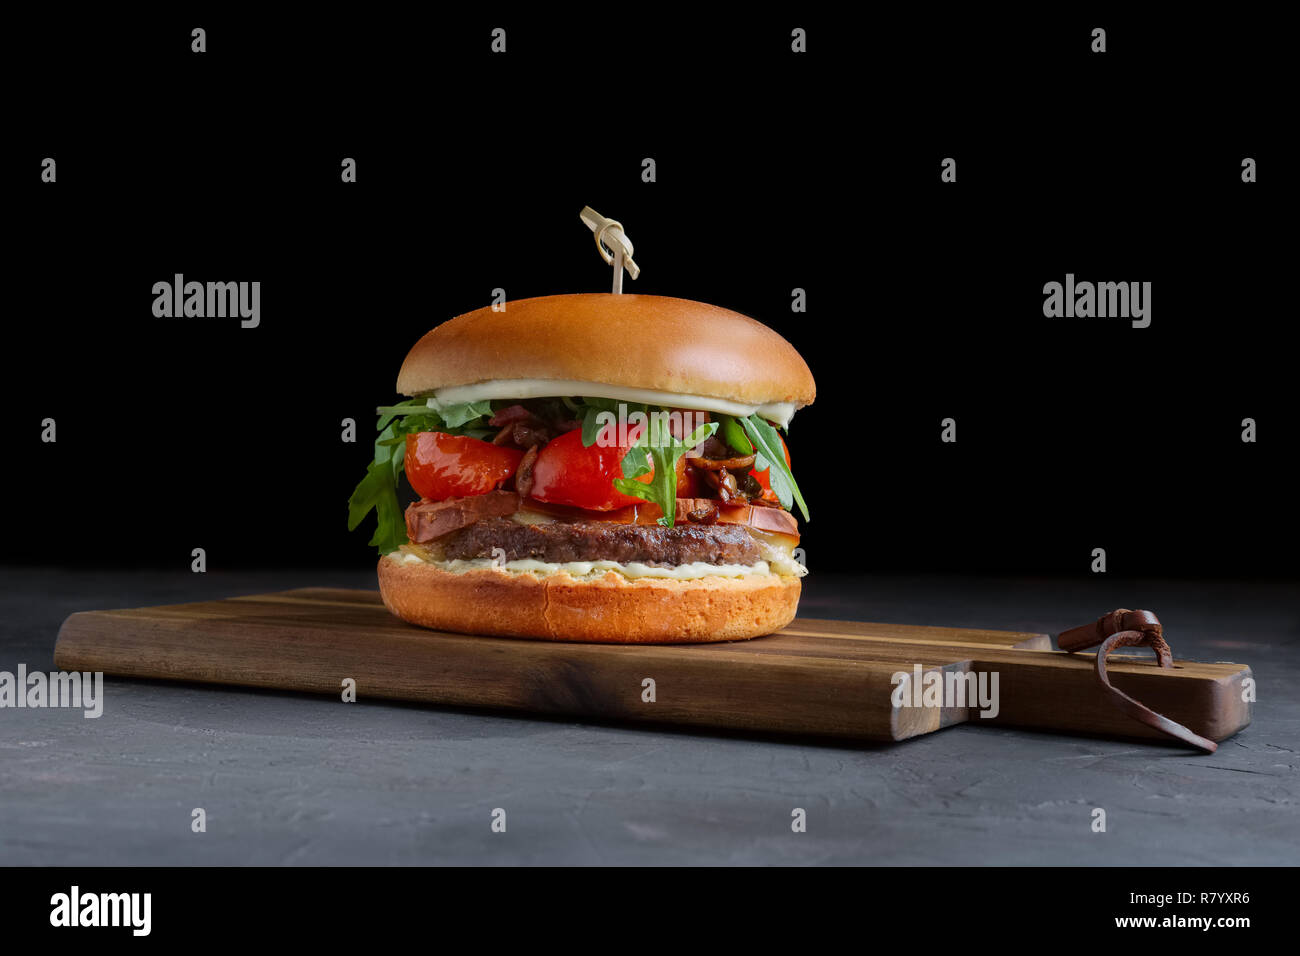 Burger de boeuf grillé savoureux avec de la laitue, le fromage et l'oignon servis sur une planche à découper avec copyspace Banque D'Images